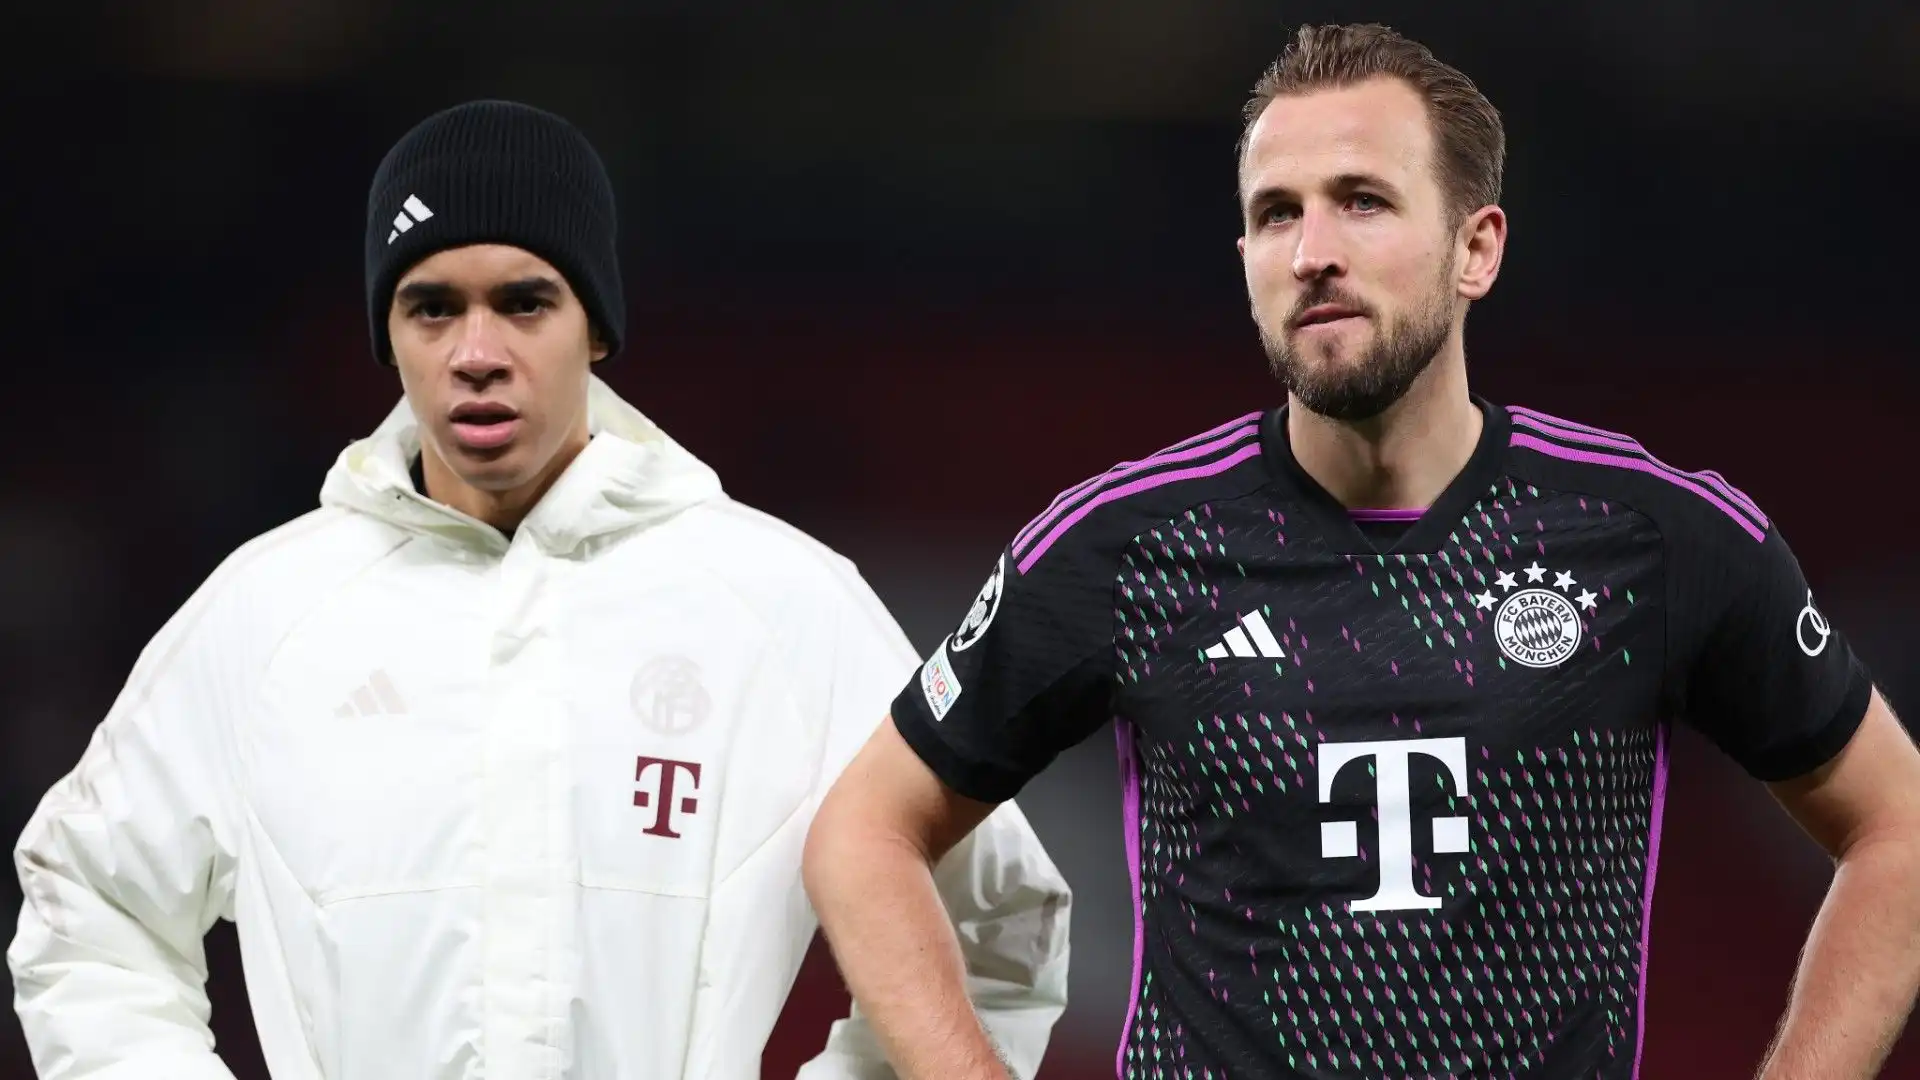 Le voci dell'interesse da parte di PSG e altri club impensieriscono il Bayern Monaco